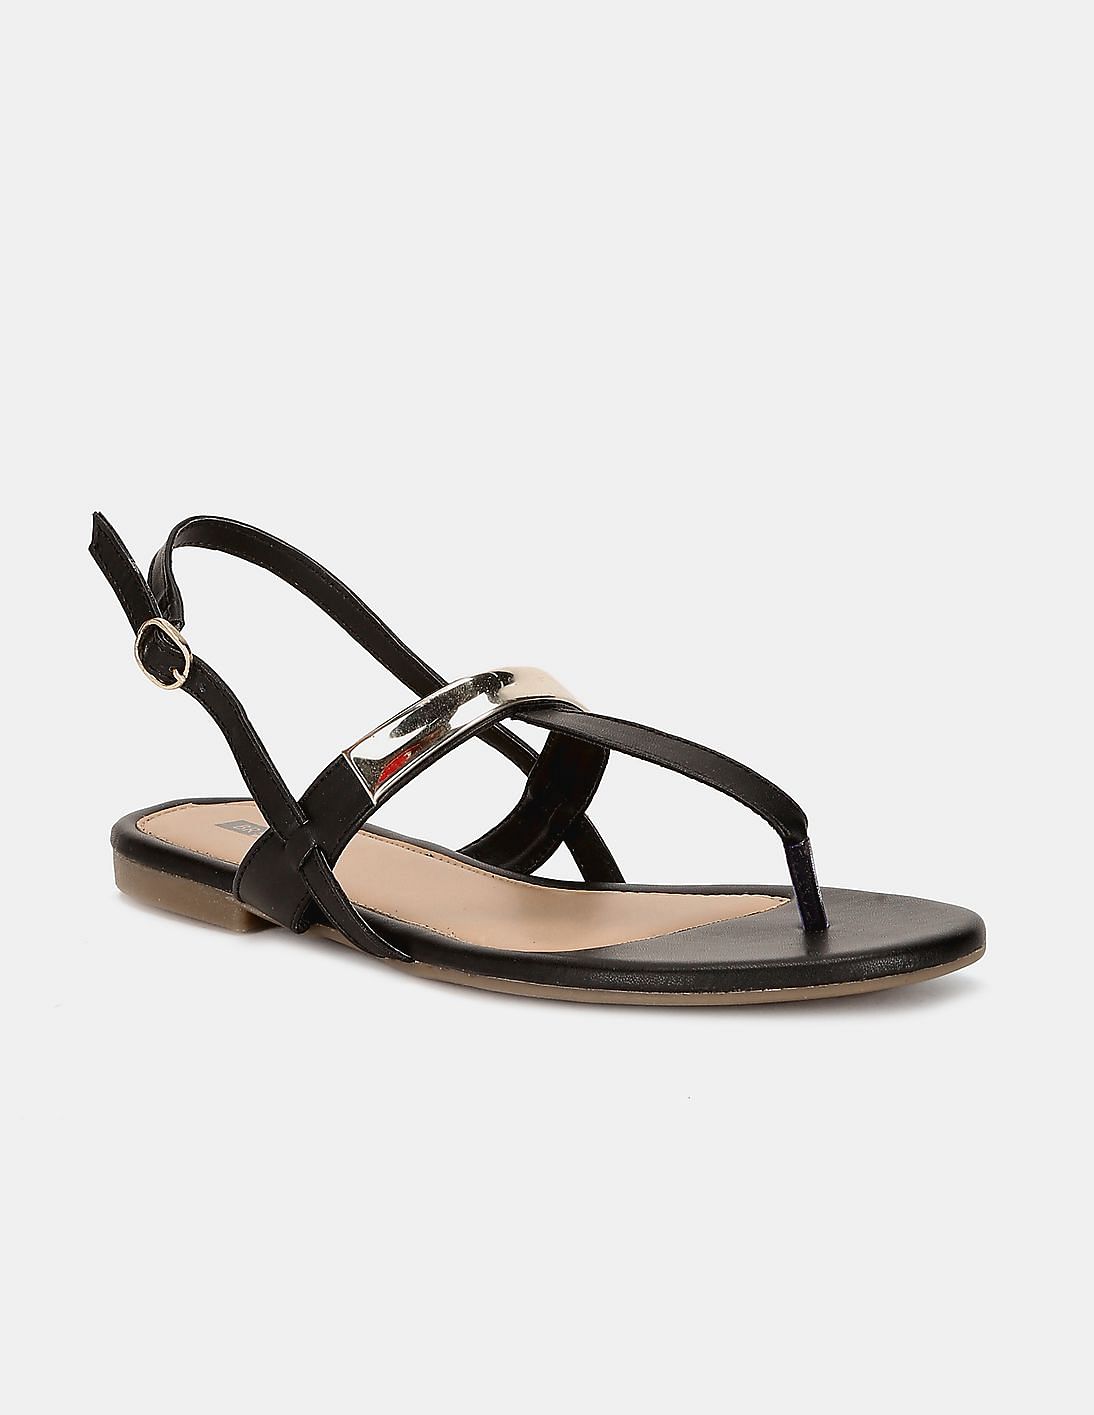 Details more than 82 black t strap flat sandals super hot - dedaotaonec